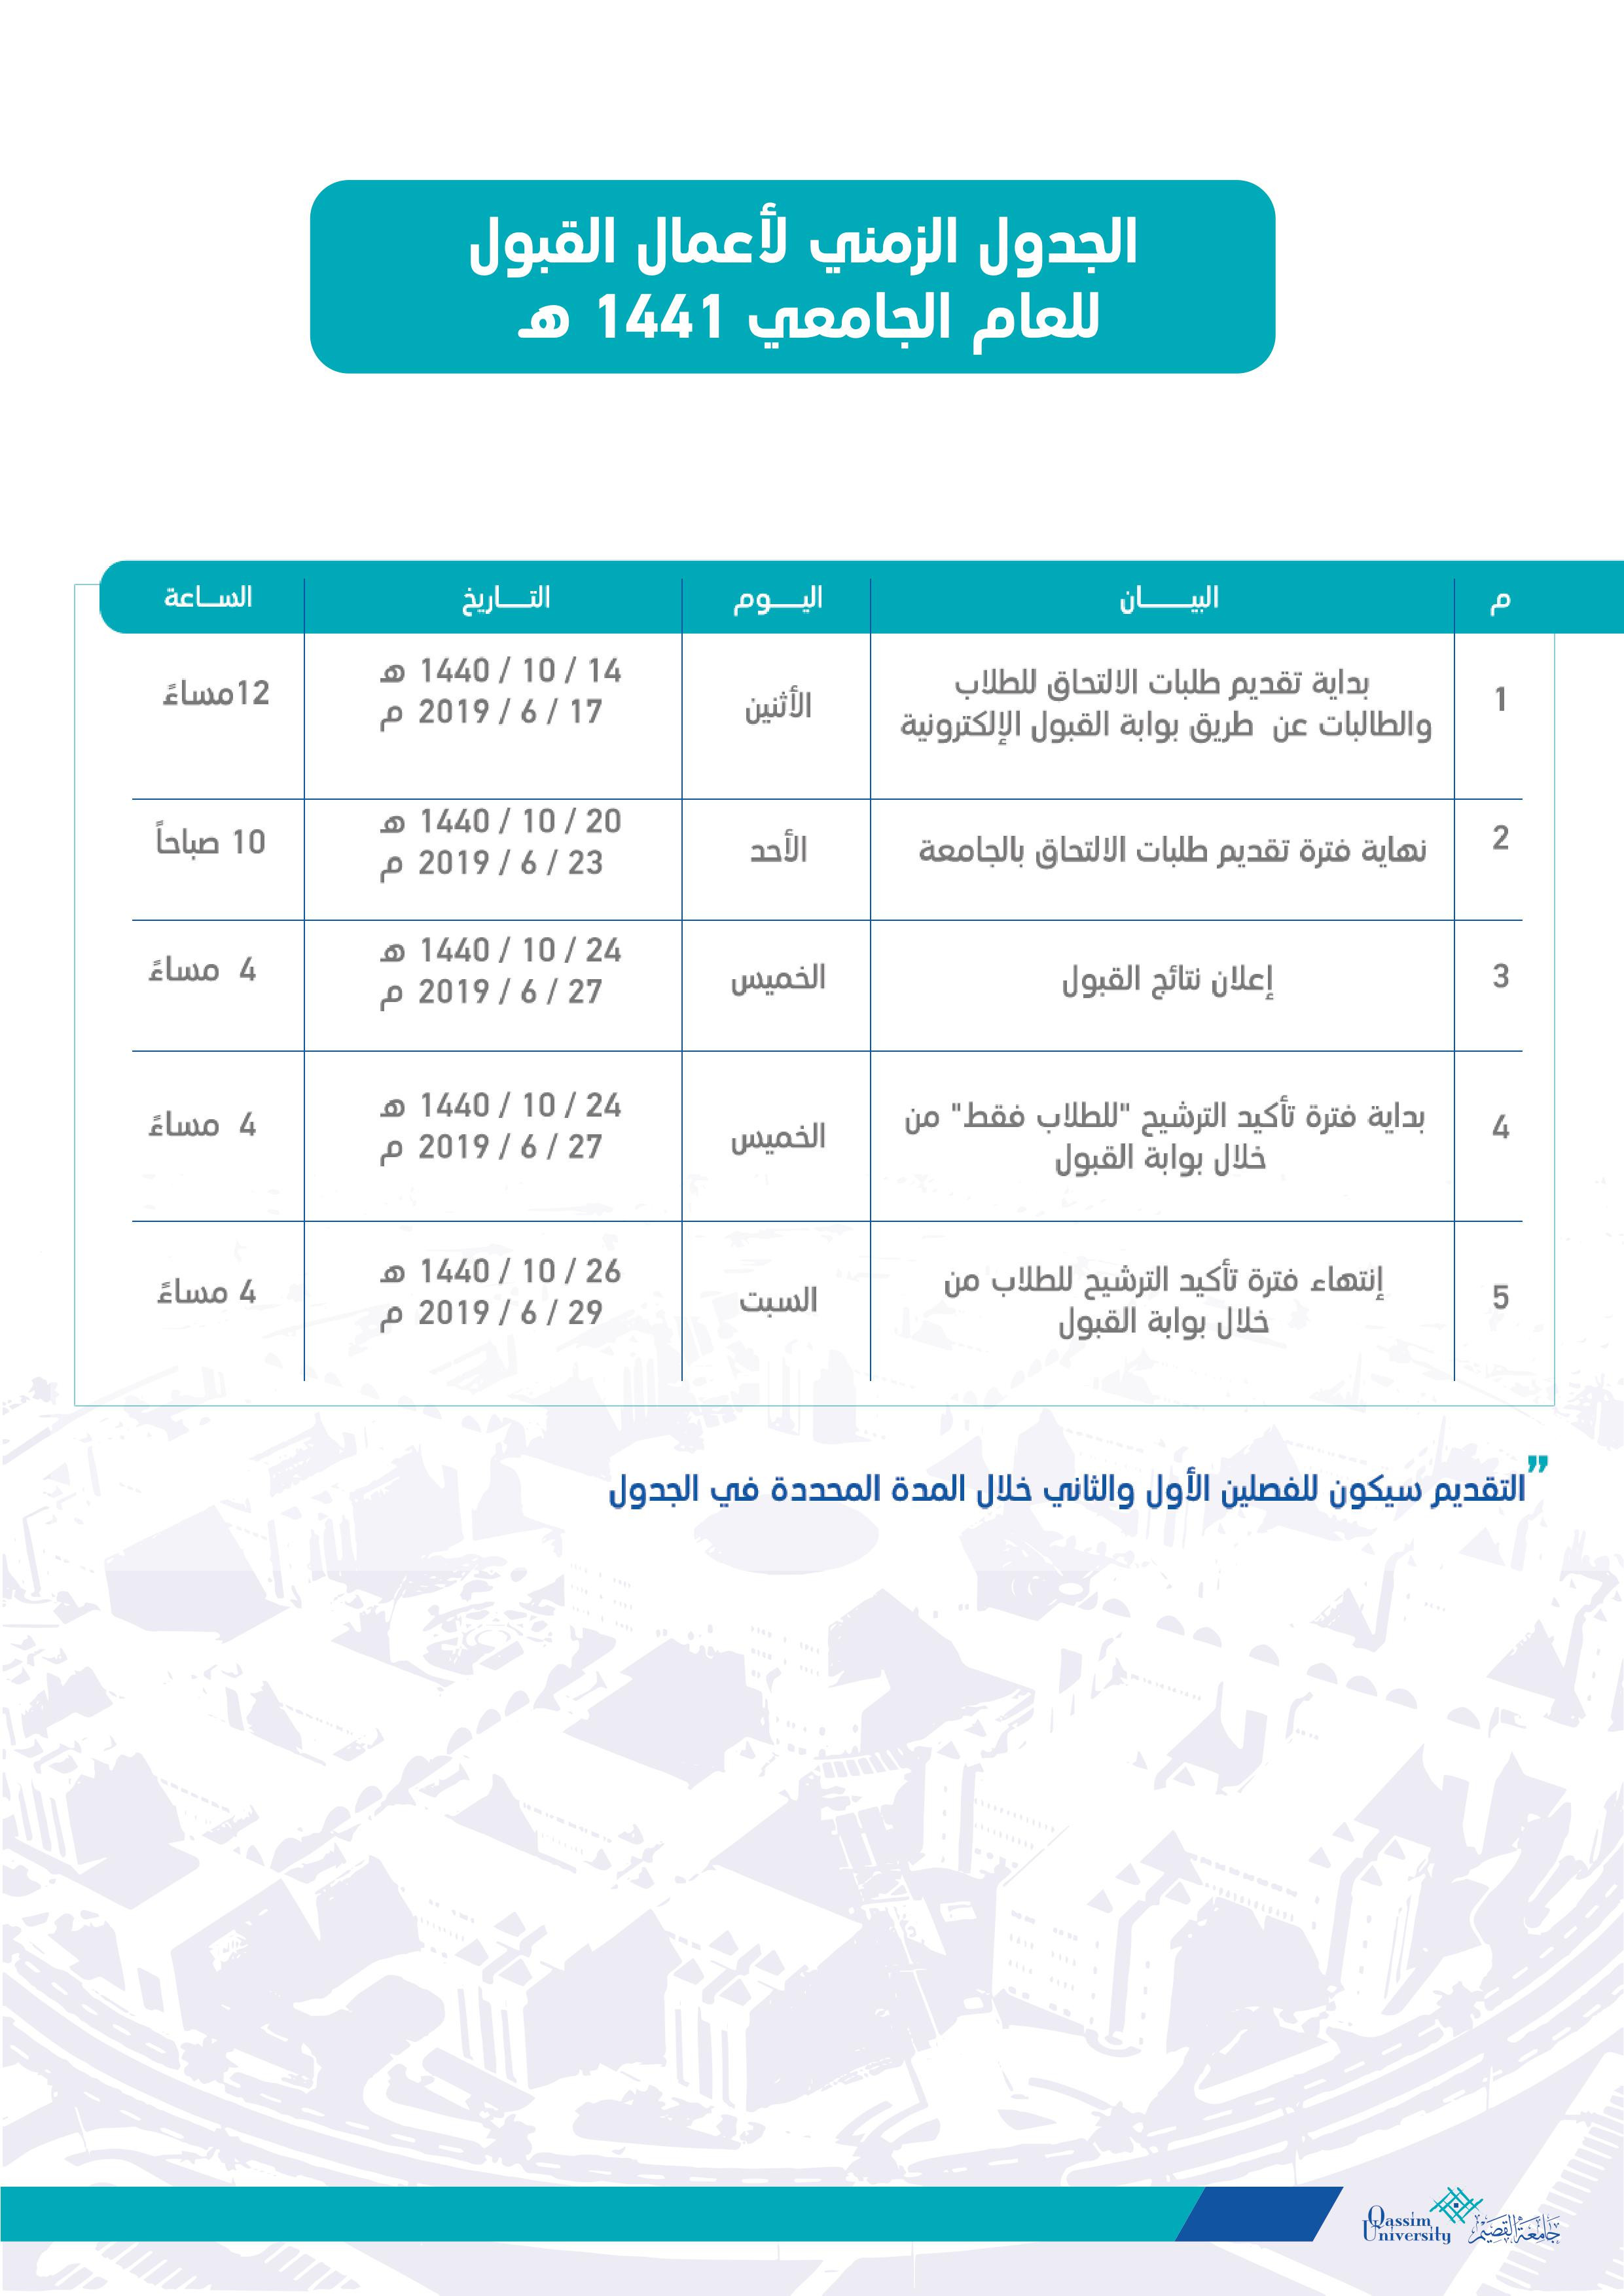 التقويم الدراسي للفصل الصيفي 393 جامعة القصيم للعام 1440 هـ مدونة المناهج السعودية